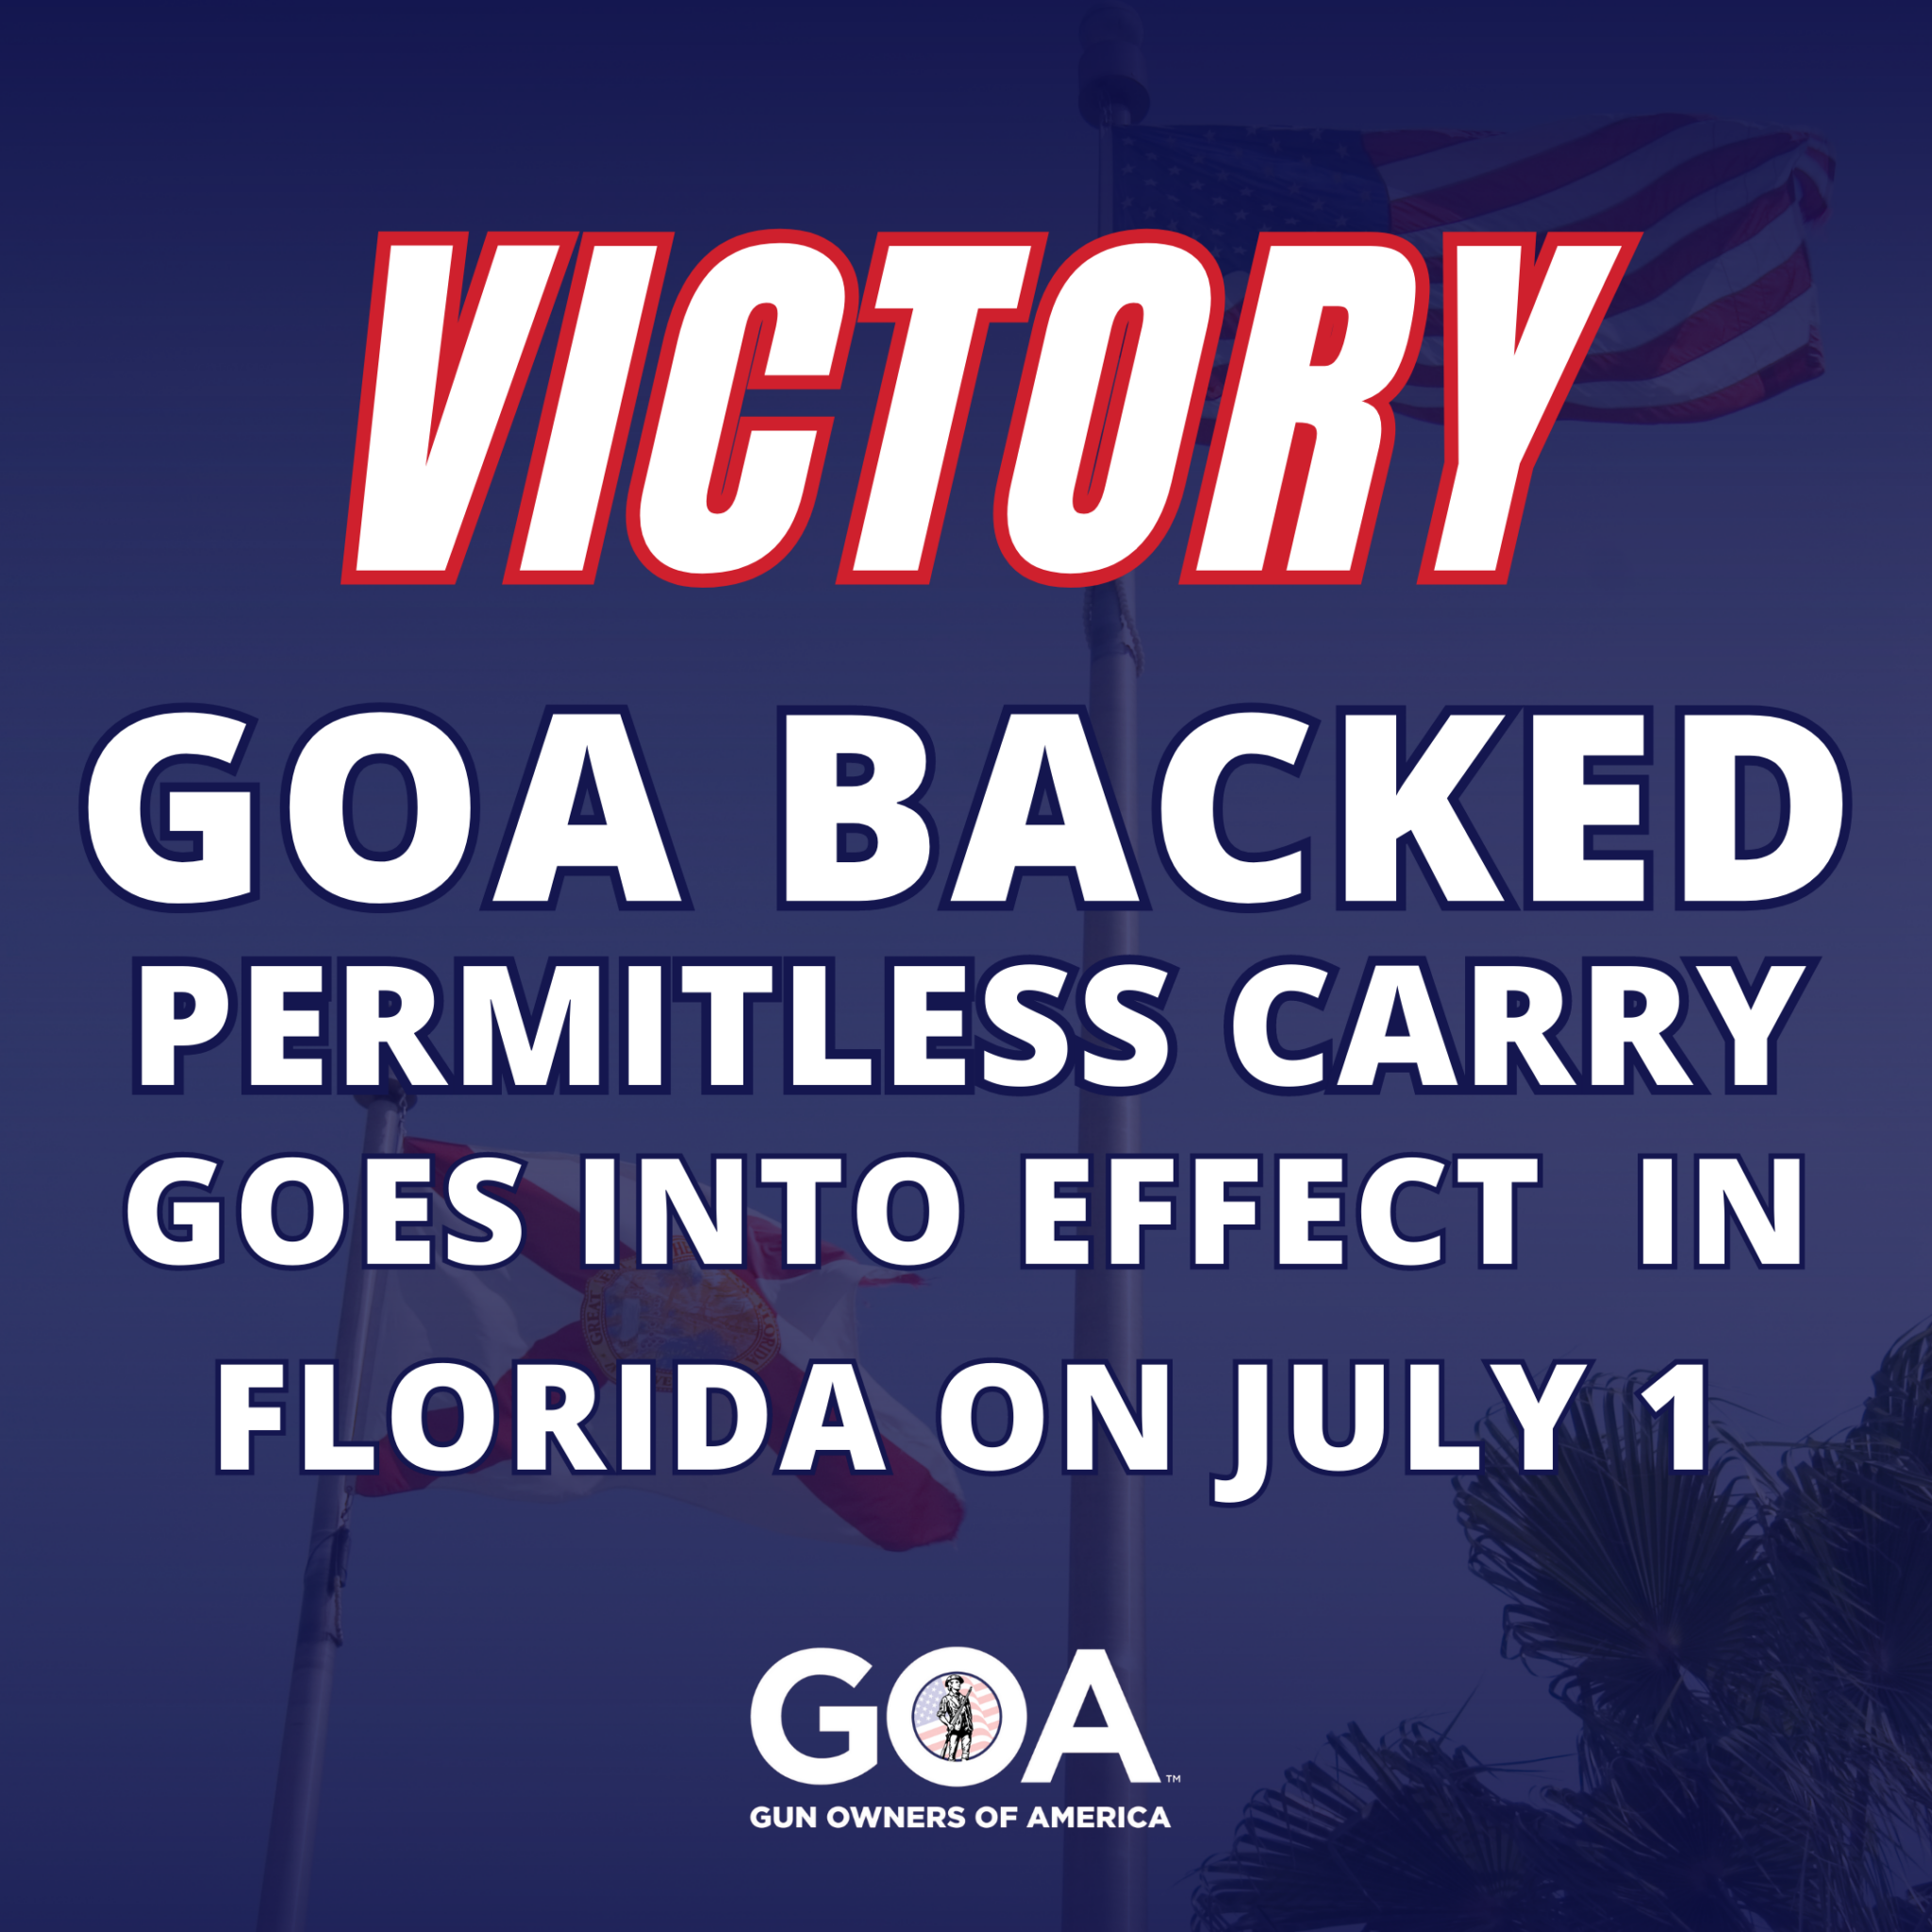 Florida 26th State To Enact PermitlessCarry! GOA